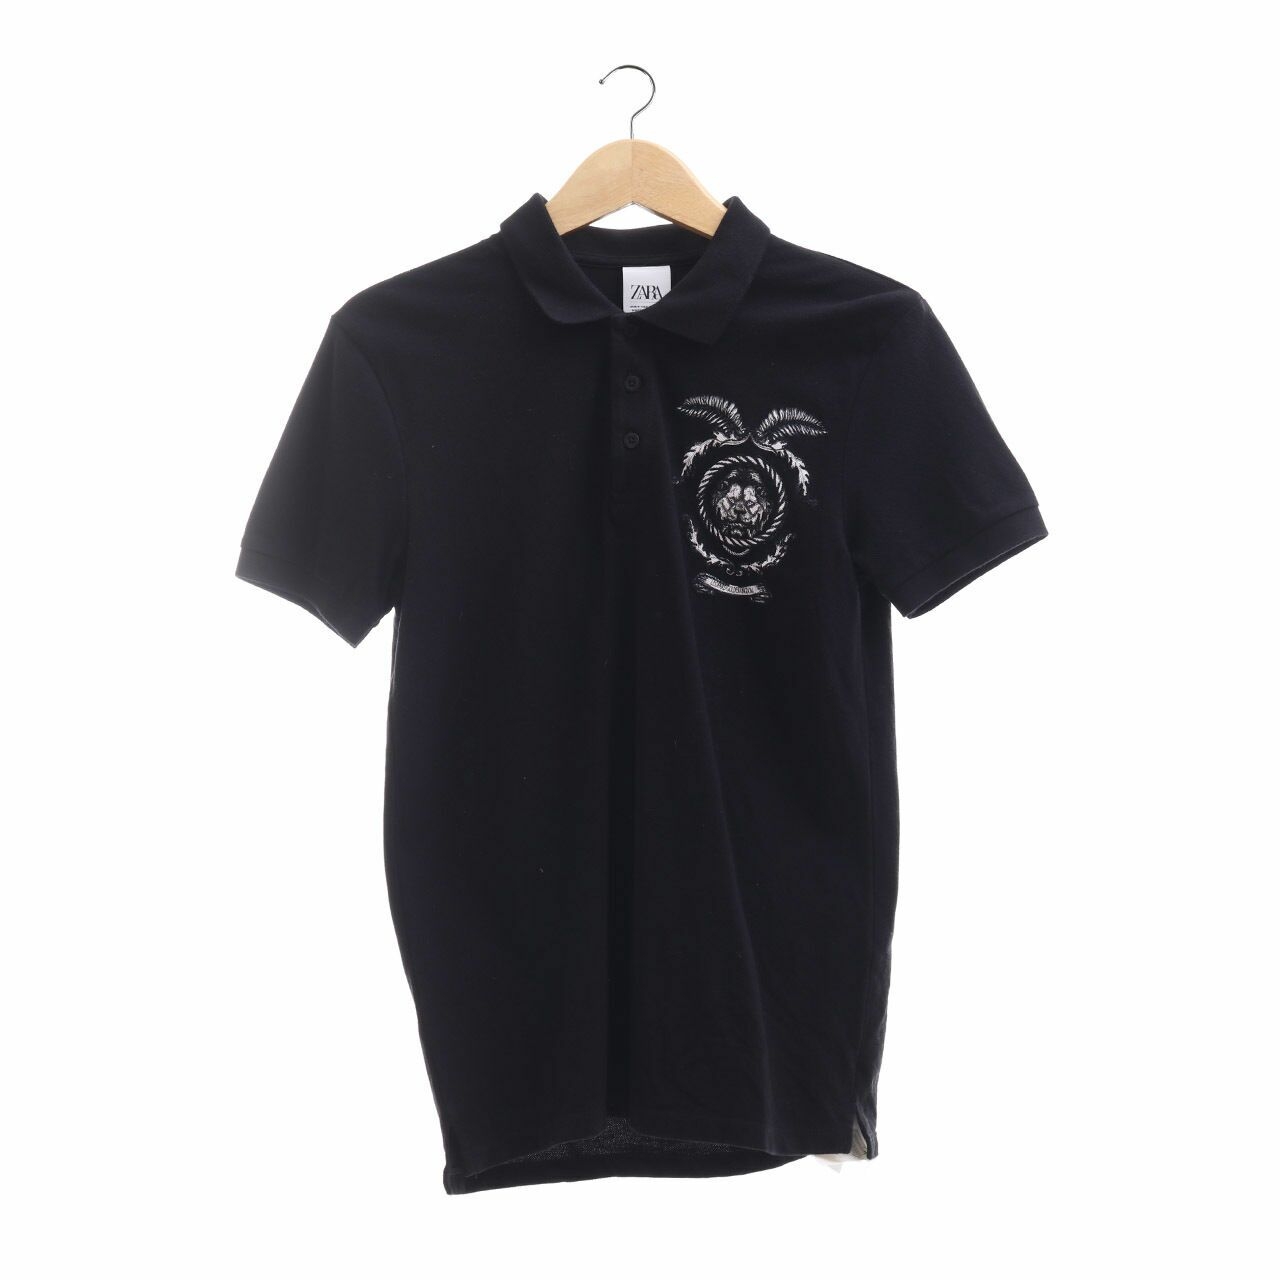 Zara Black T-Shirt